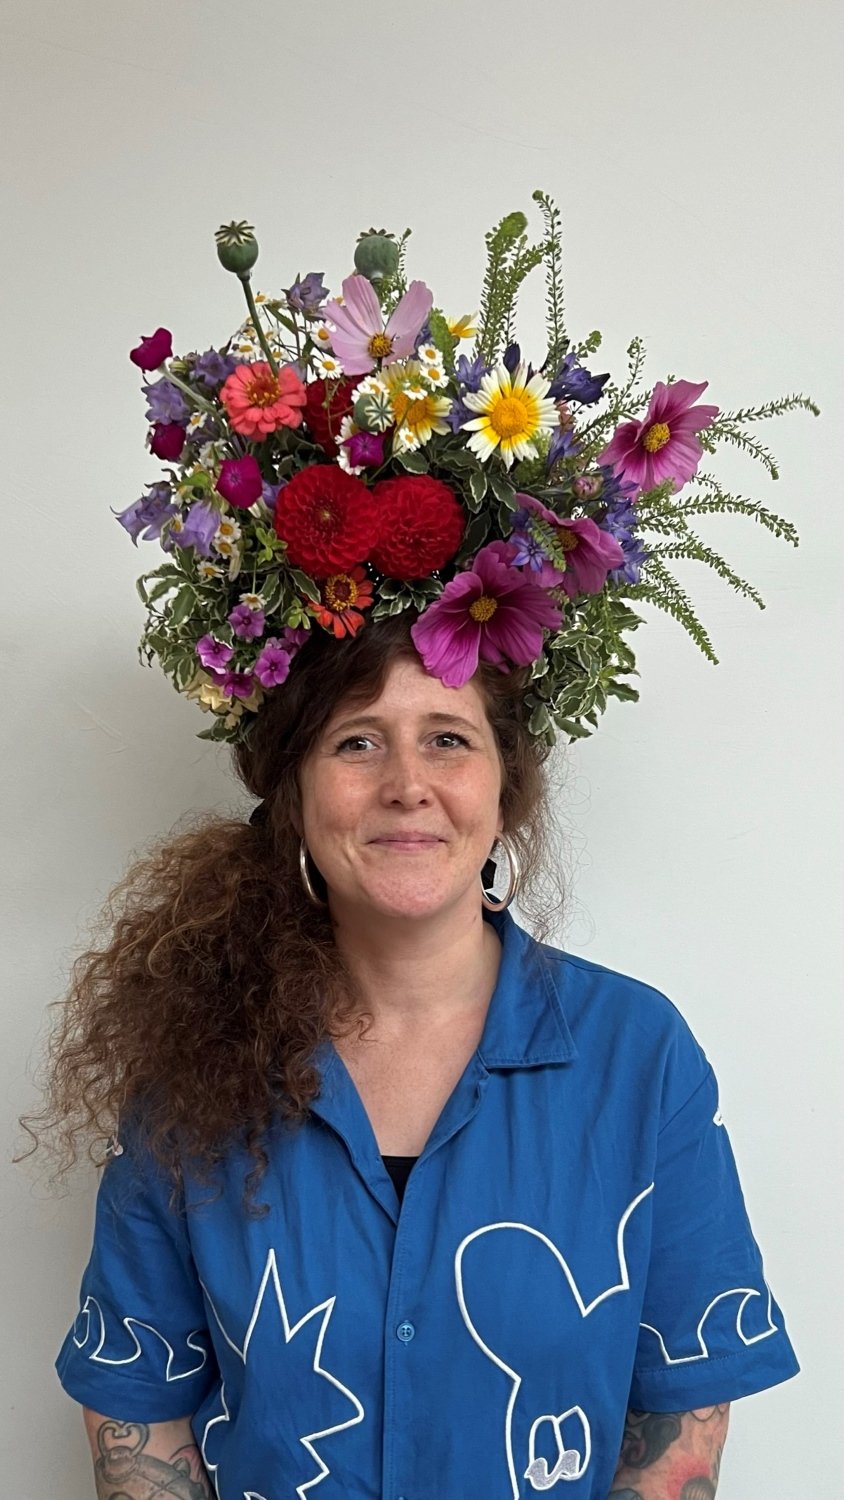  Sophie Powell, U.FL.O. wearing her flower crown from The Bath Flower School's workshop